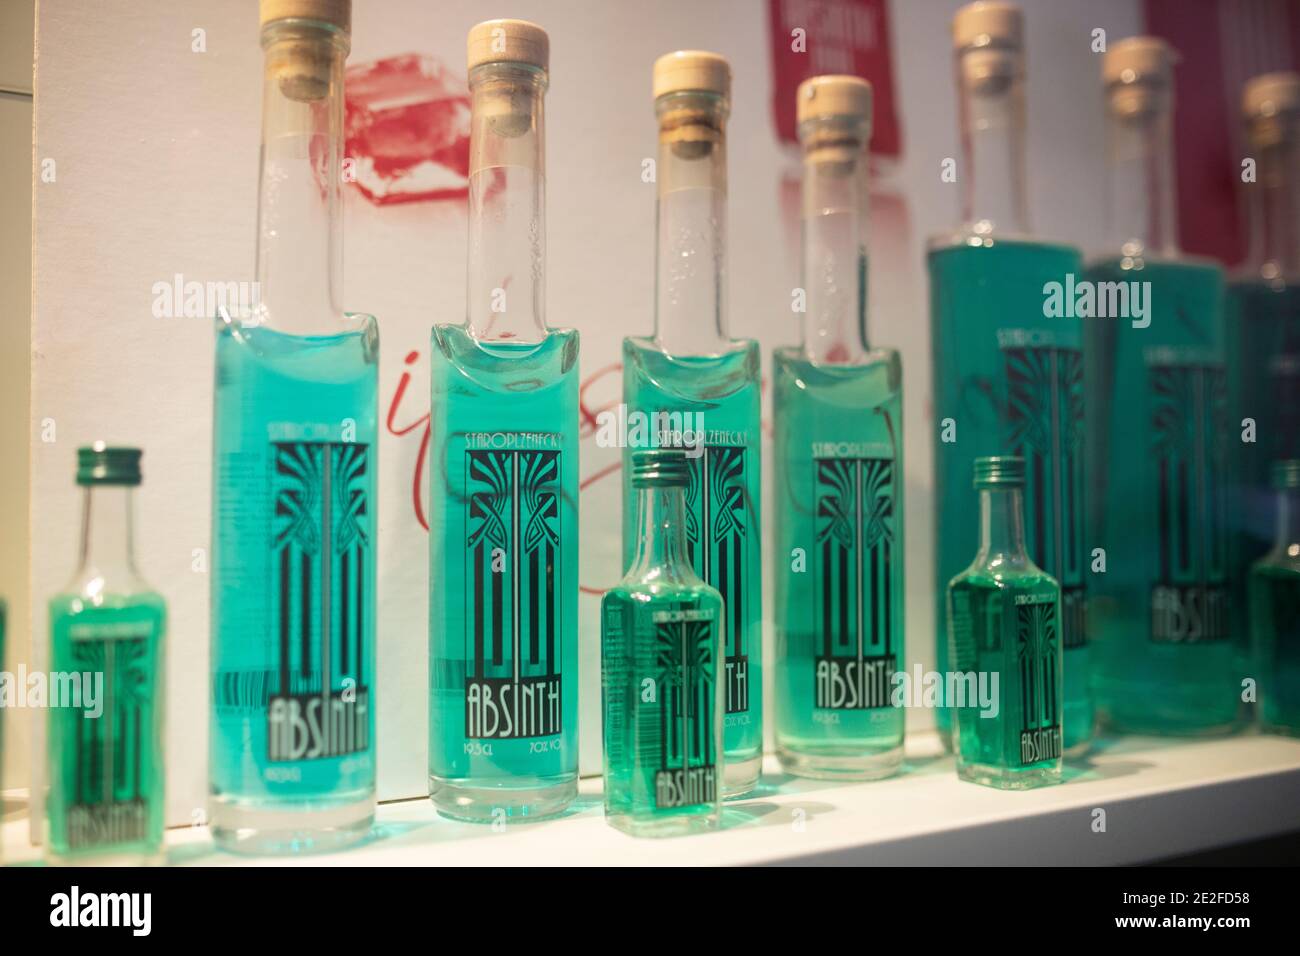 Botellas de absinthe en venta en la ventana de una tienda en Praga, República Checa. Foto de stock